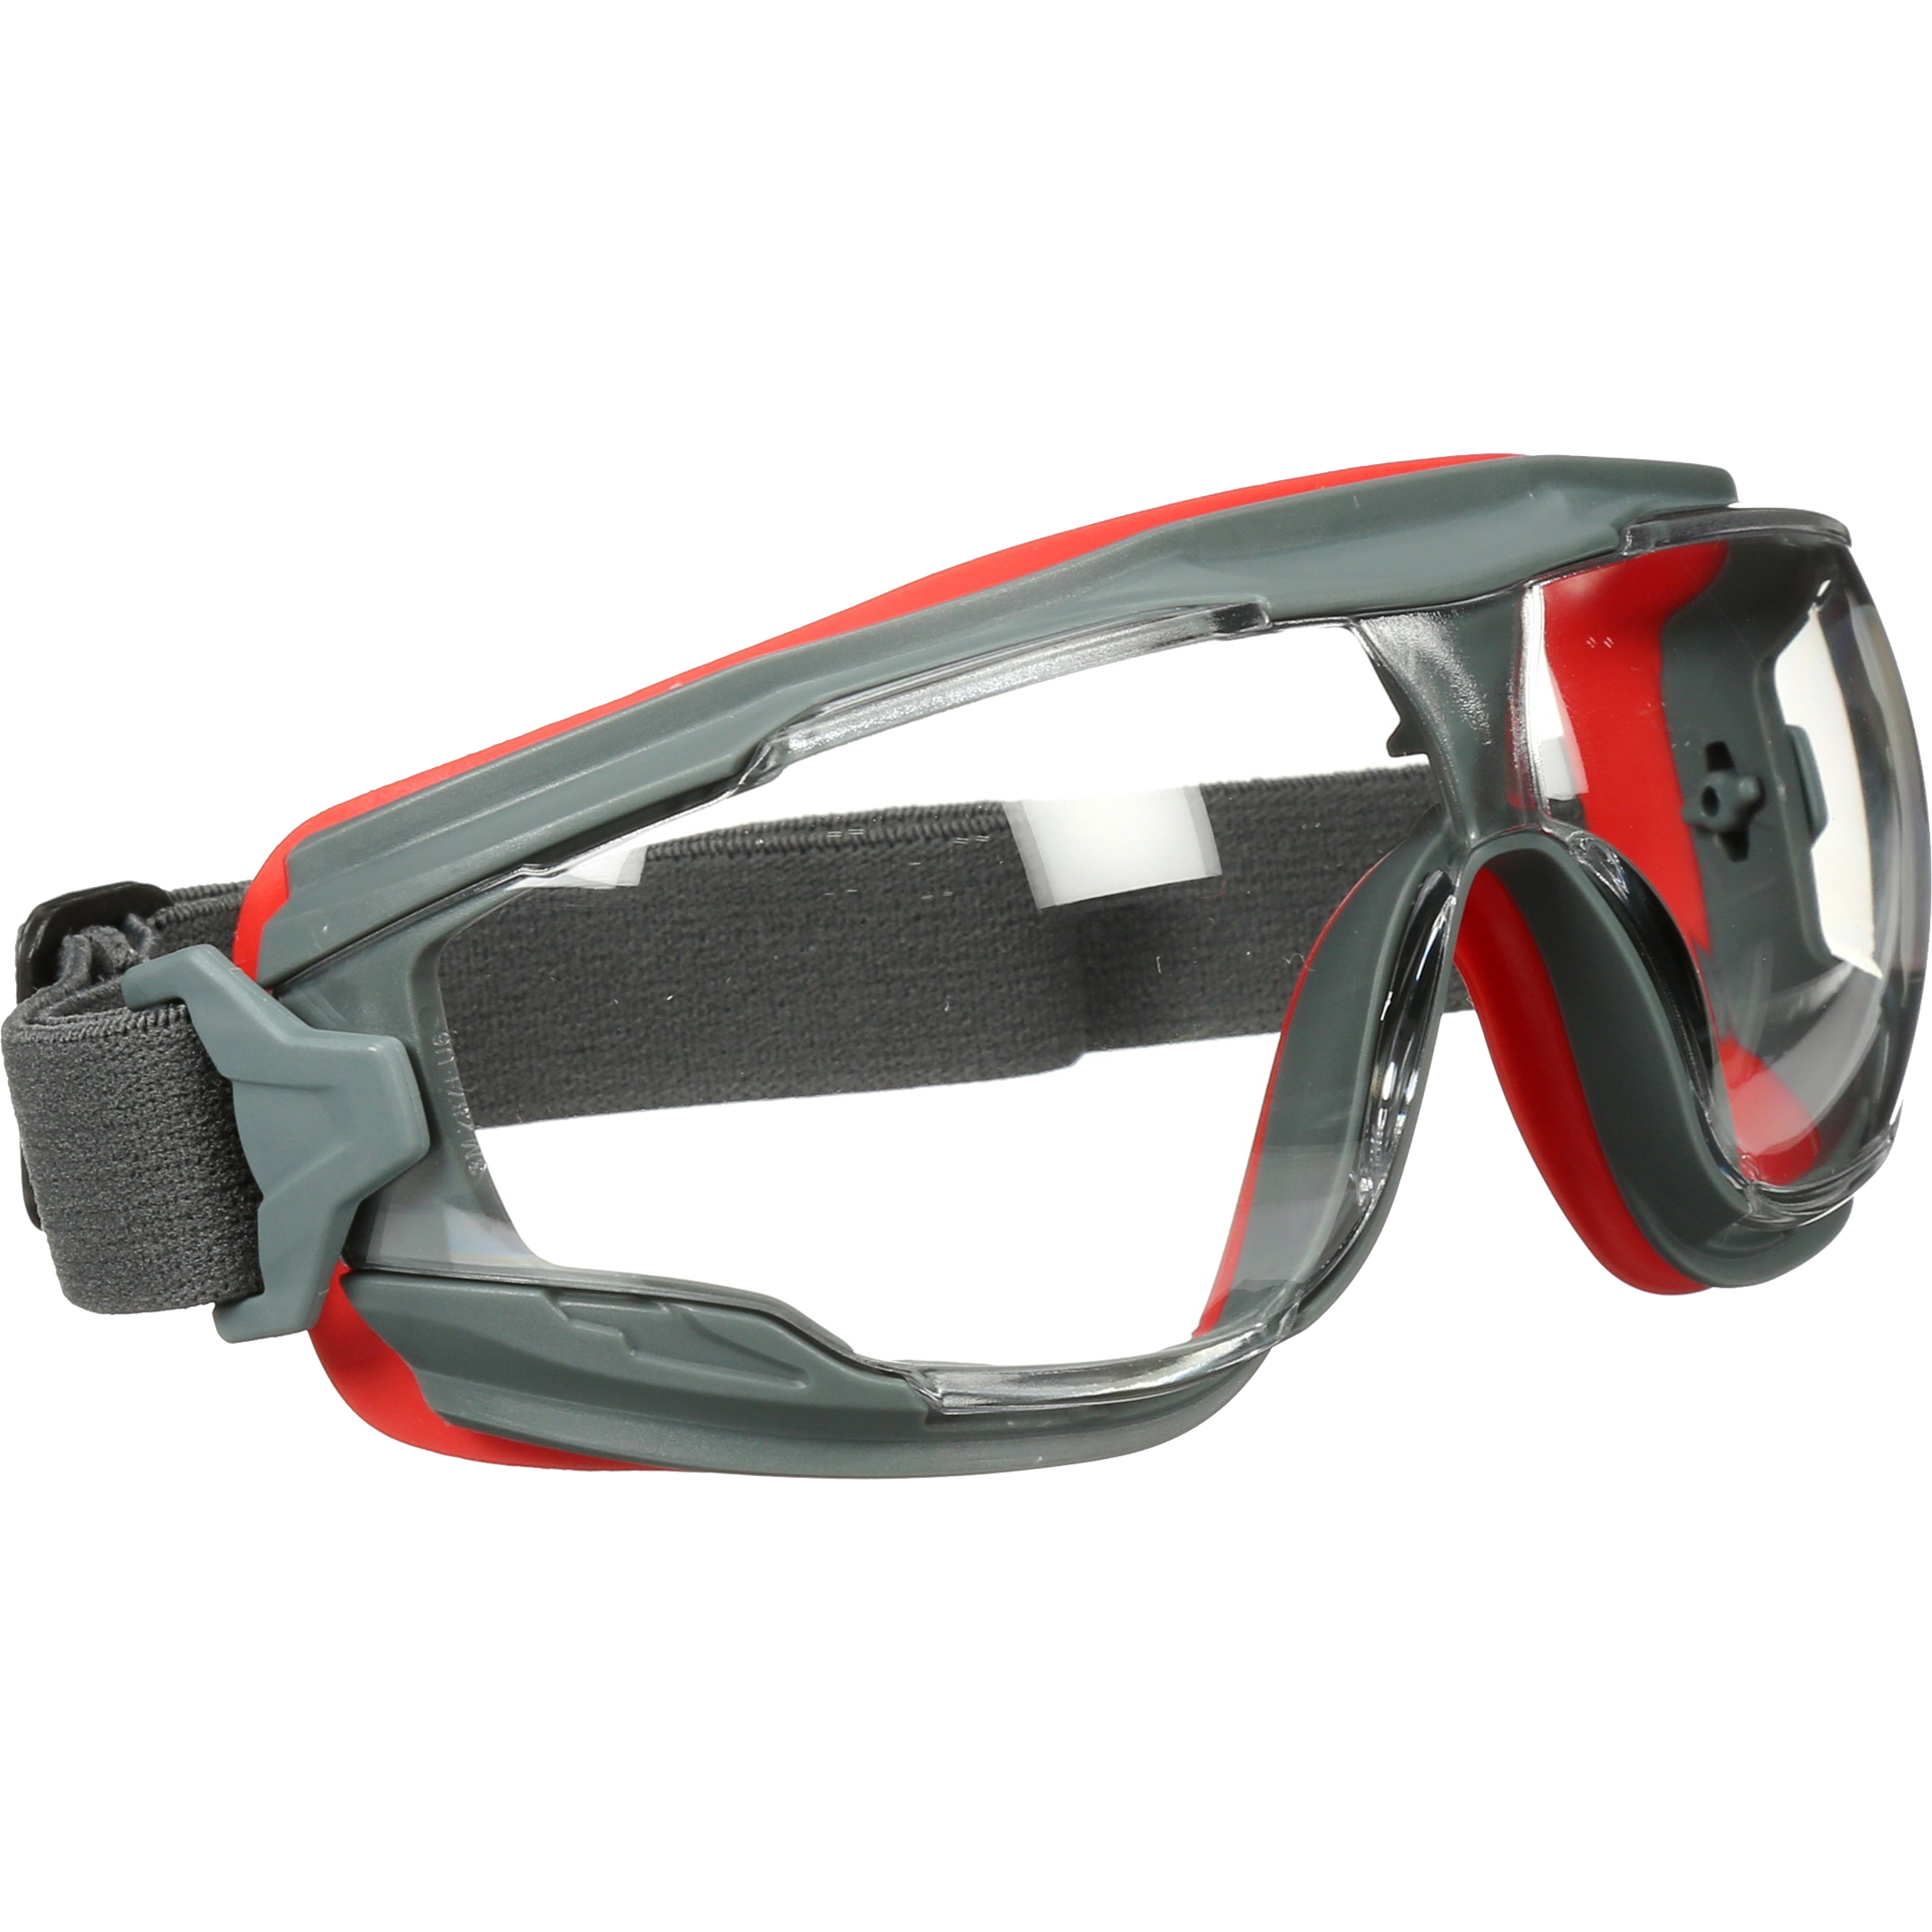 Очки защитные красные. Очки 3m gg501. Очки защитные 3м gg501. Очки защитные очки 3m gg501. Очки защитные 3m gg501 закрытые.